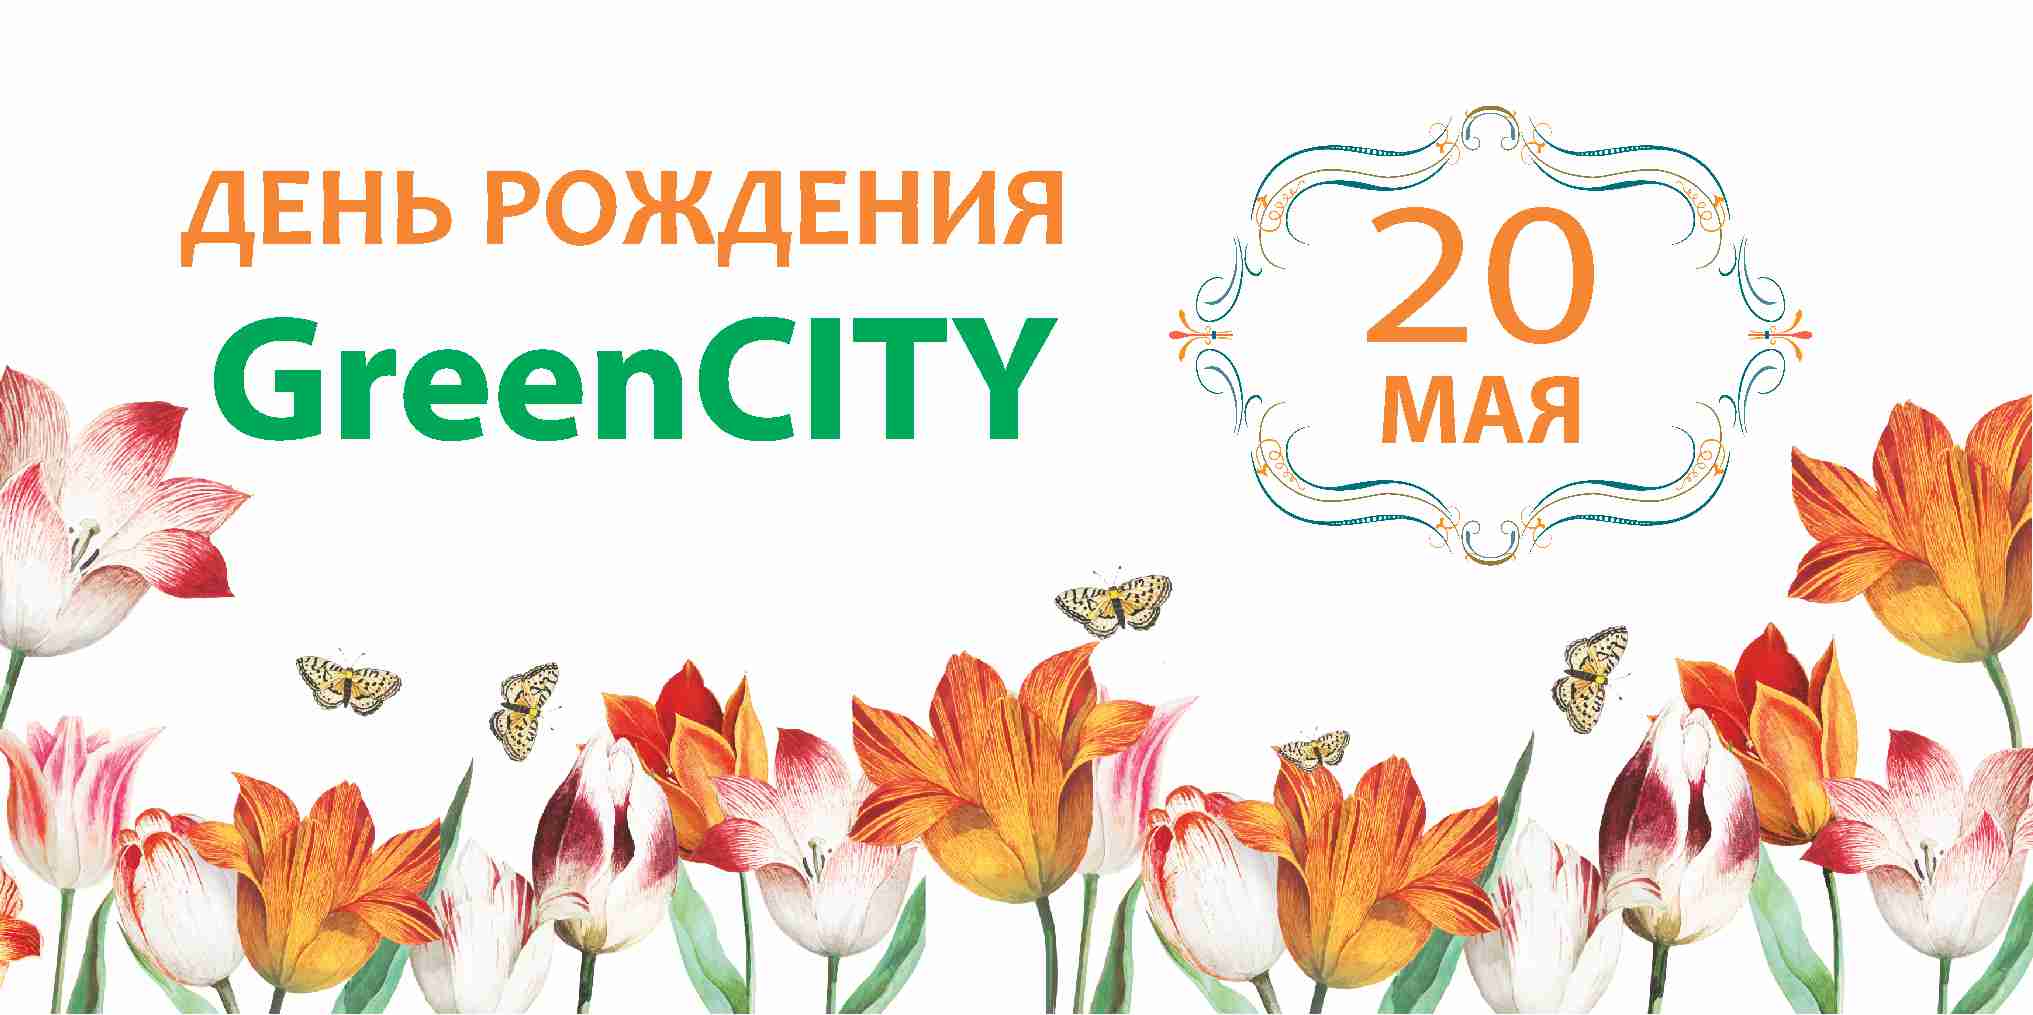 День рождения химчистки GreenCITY 20 мая - GreenCity